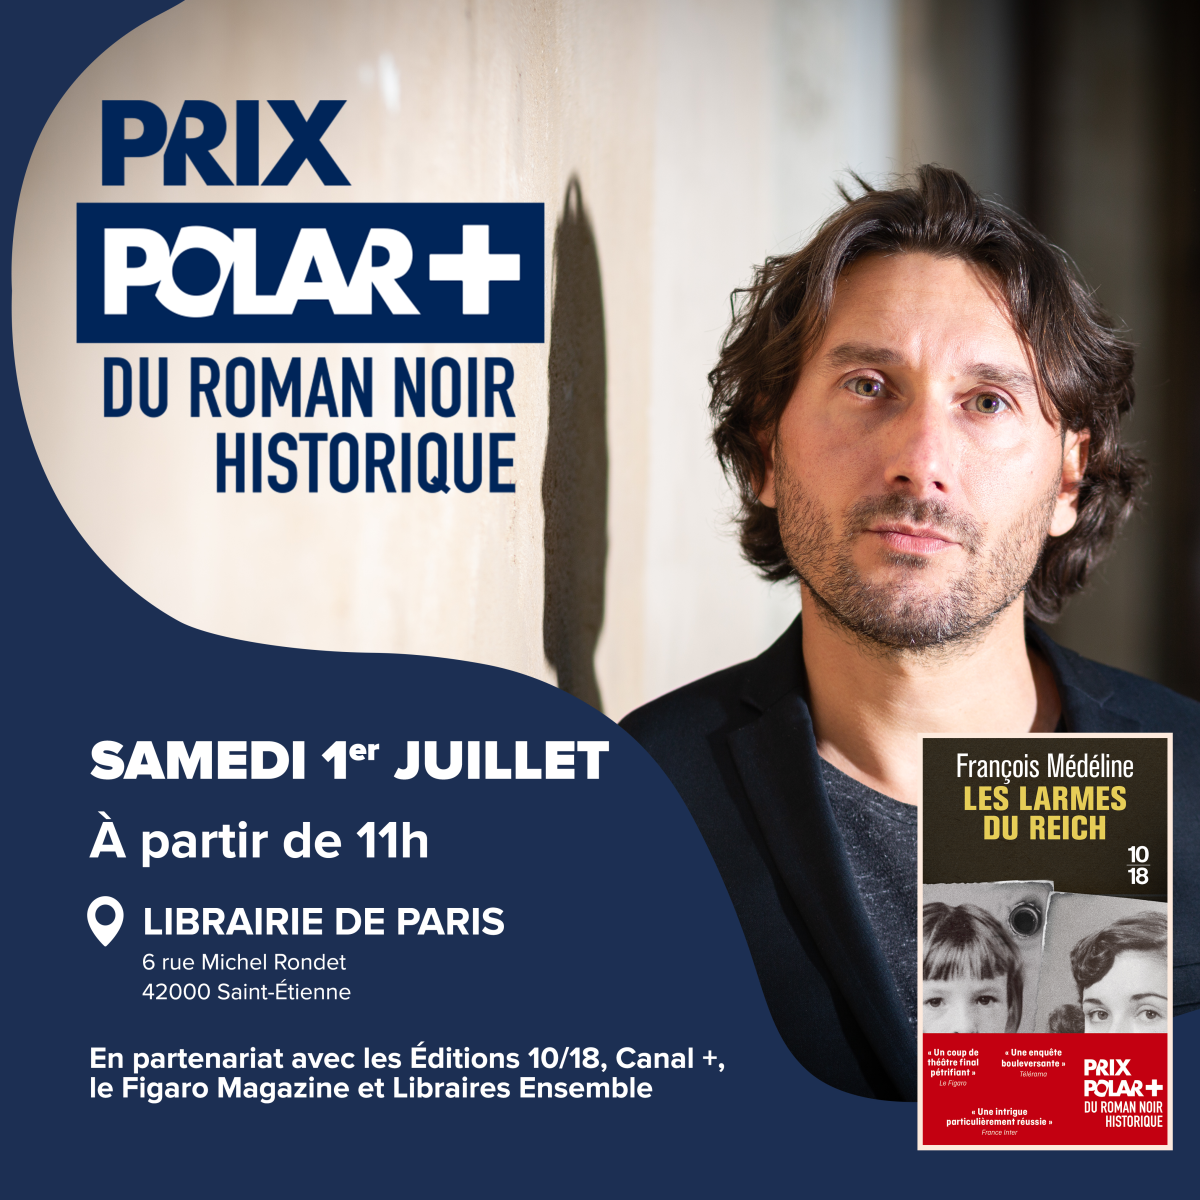 Prix Polar + du Roman Noir Historique